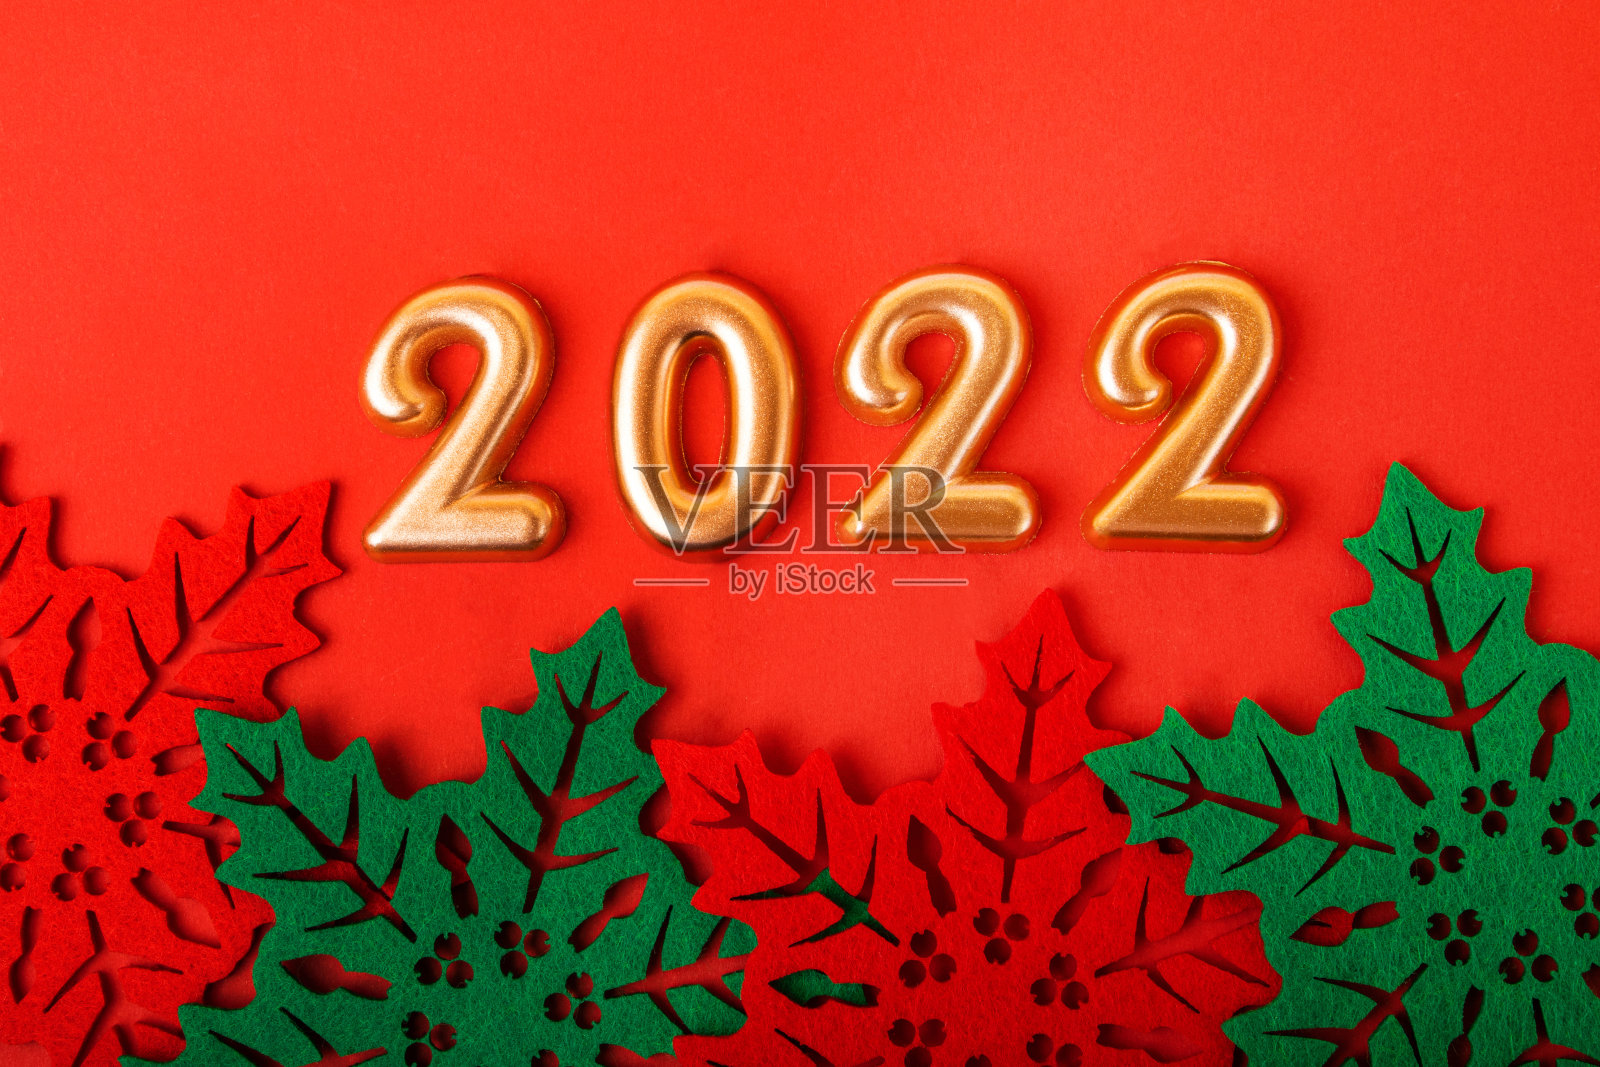 红色背景上的金色数字是2022。下面是美丽的冬青树叶子。新年的背景。照片摄影图片